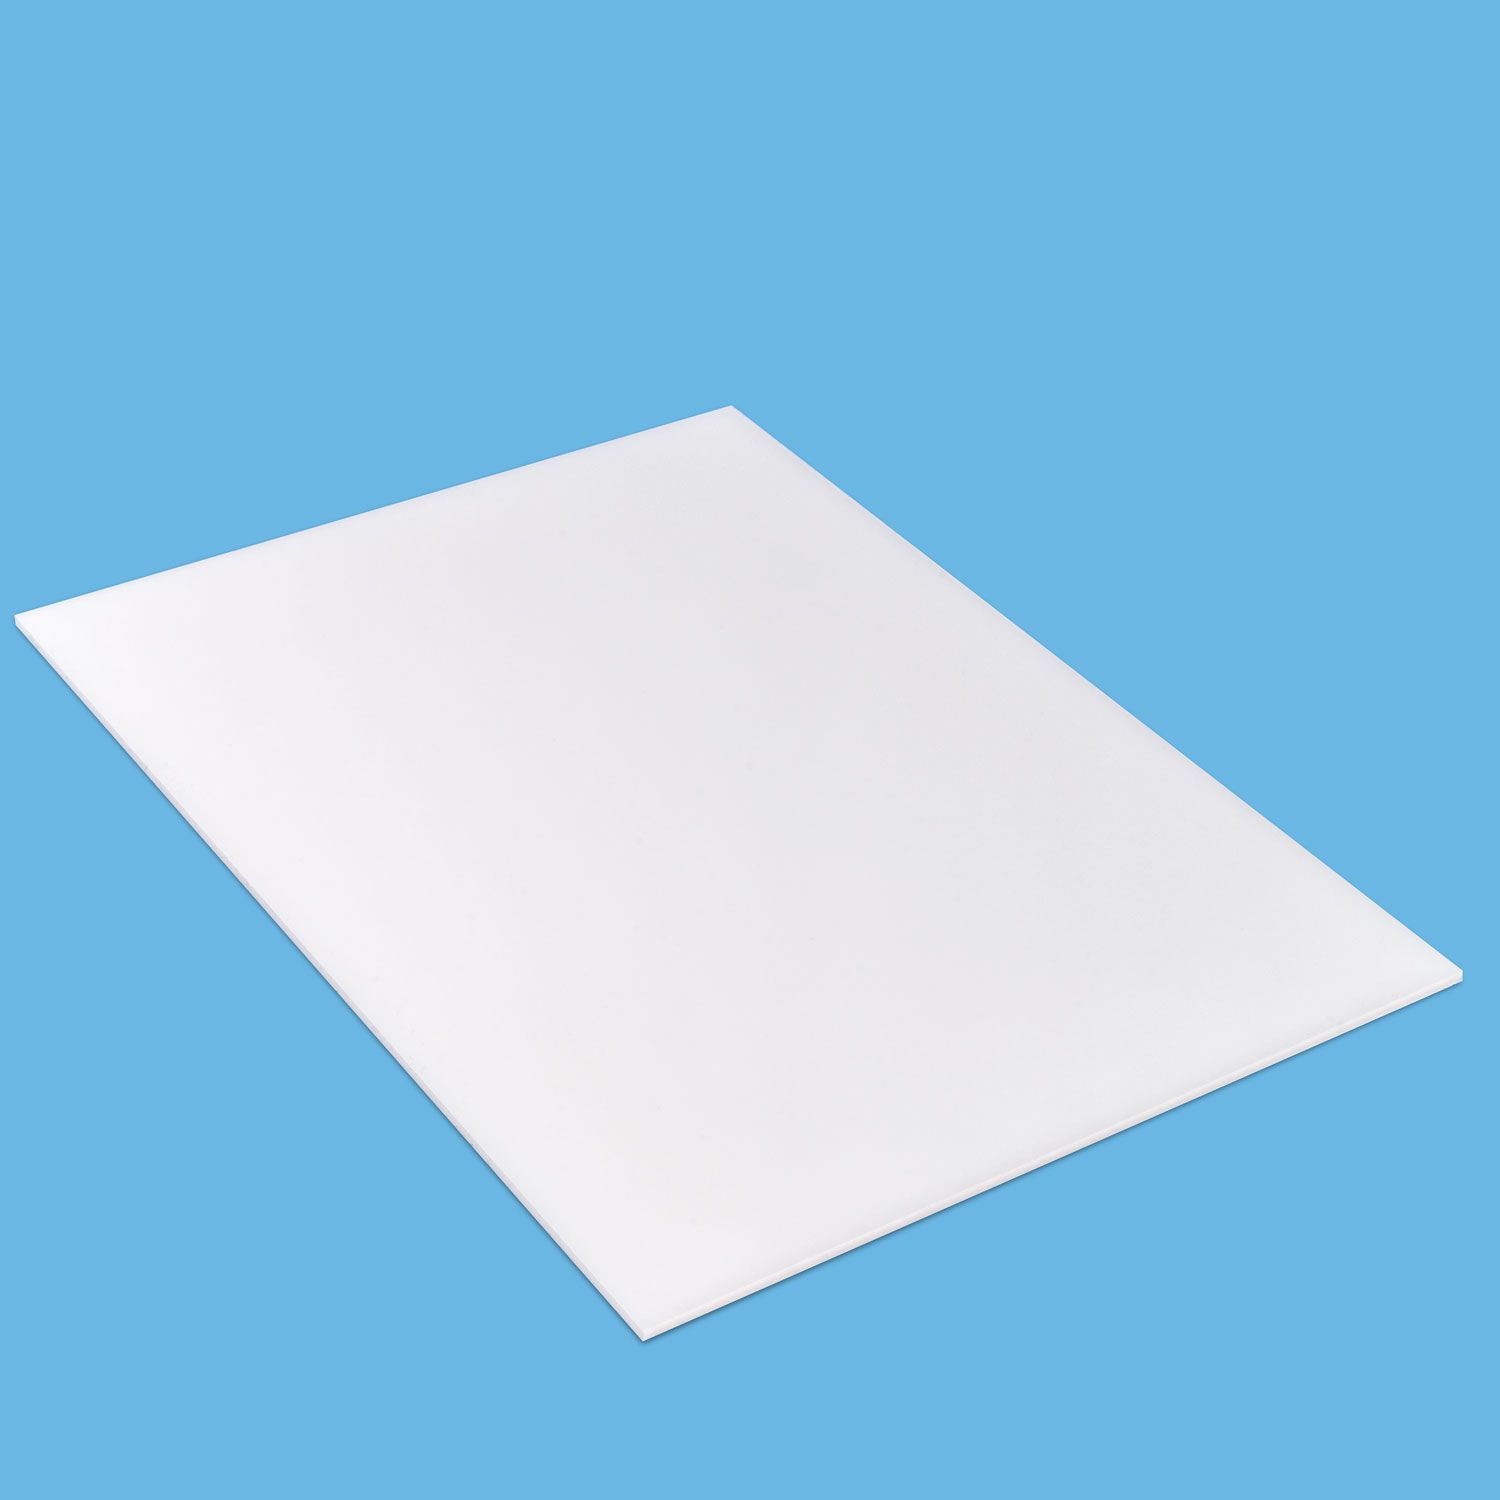 1 Platte Plexiglas® 210x320x3mm XT weiß WN770 